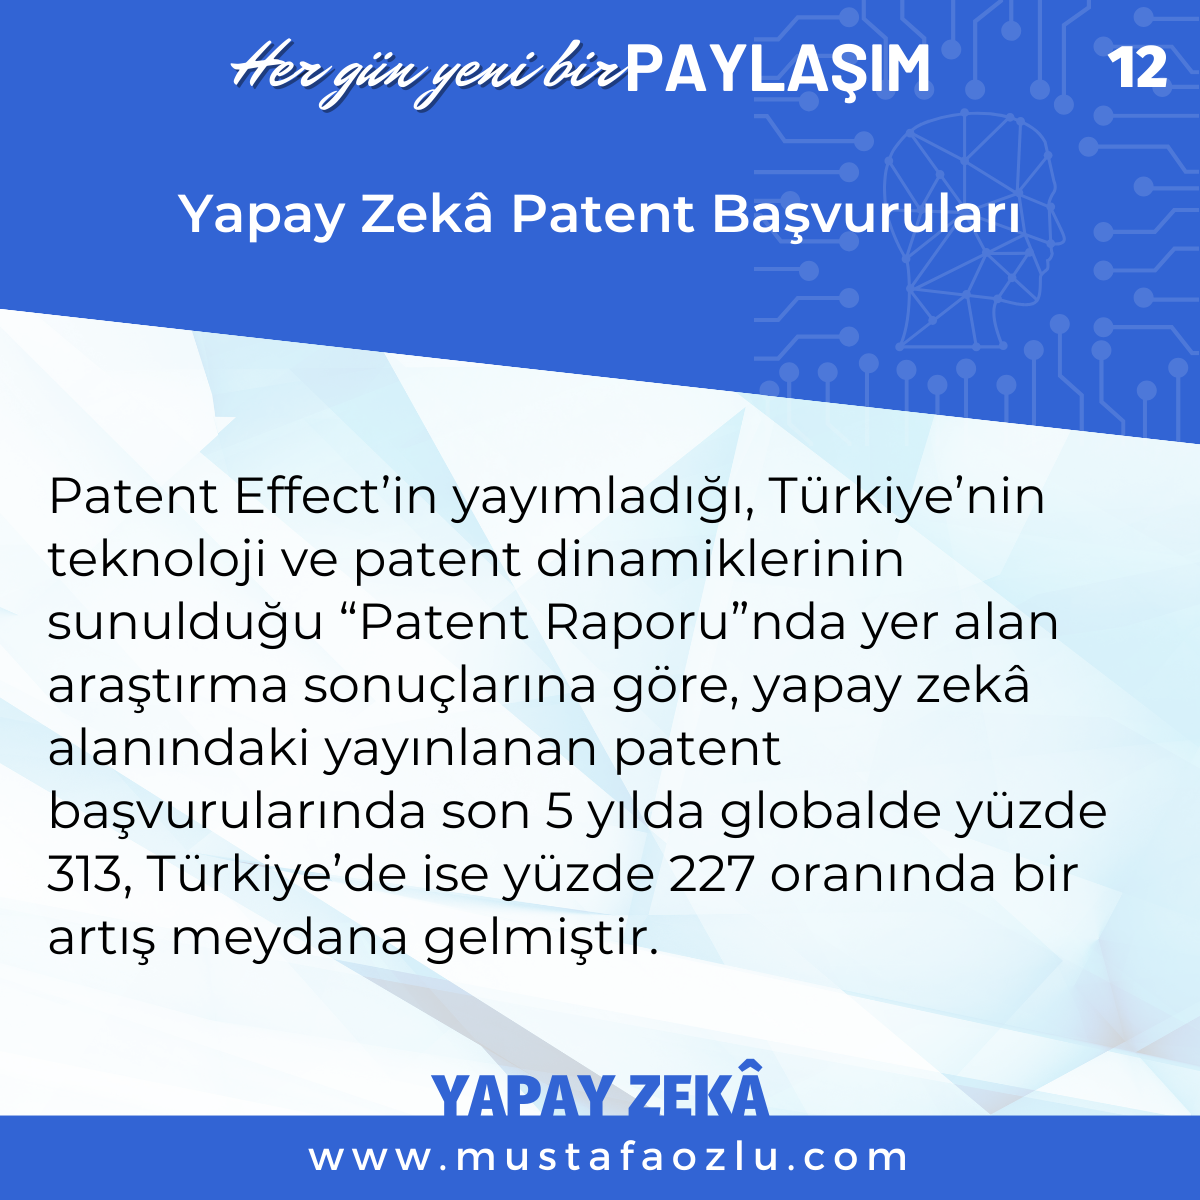 Yapay Zekâ Patent Başvuruları - Mustafa ÖZLÜ